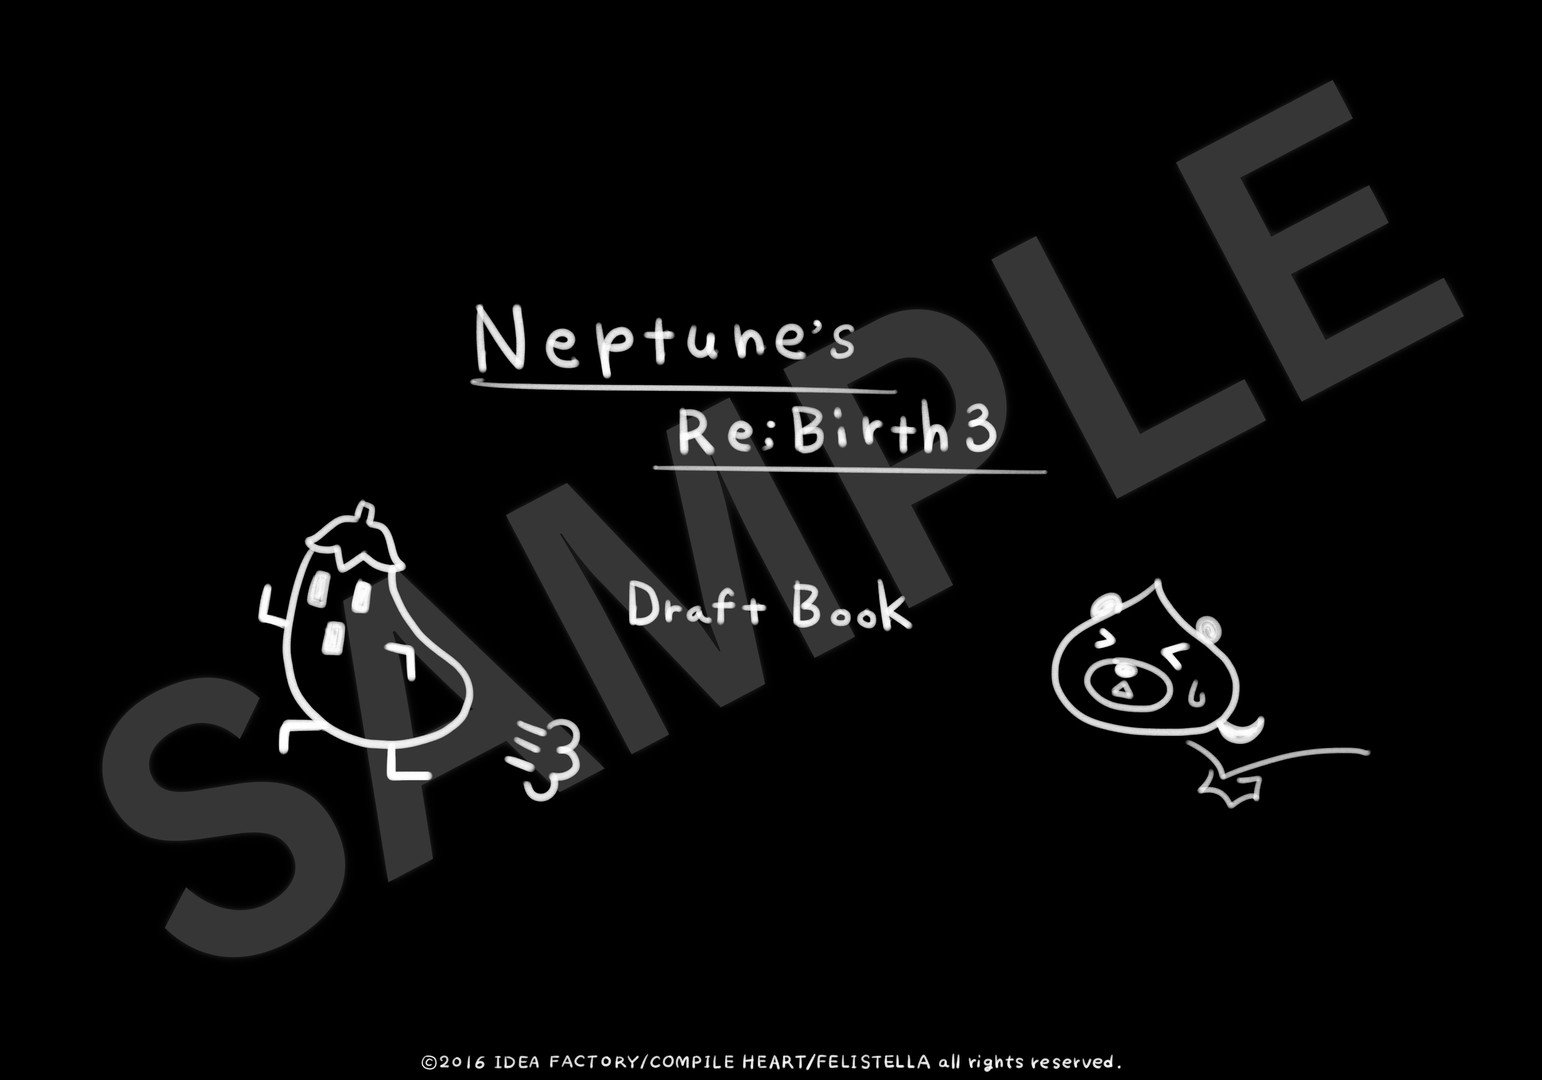 Hyperdimension Neptunia ReBirth3 Deluxe Pack 2